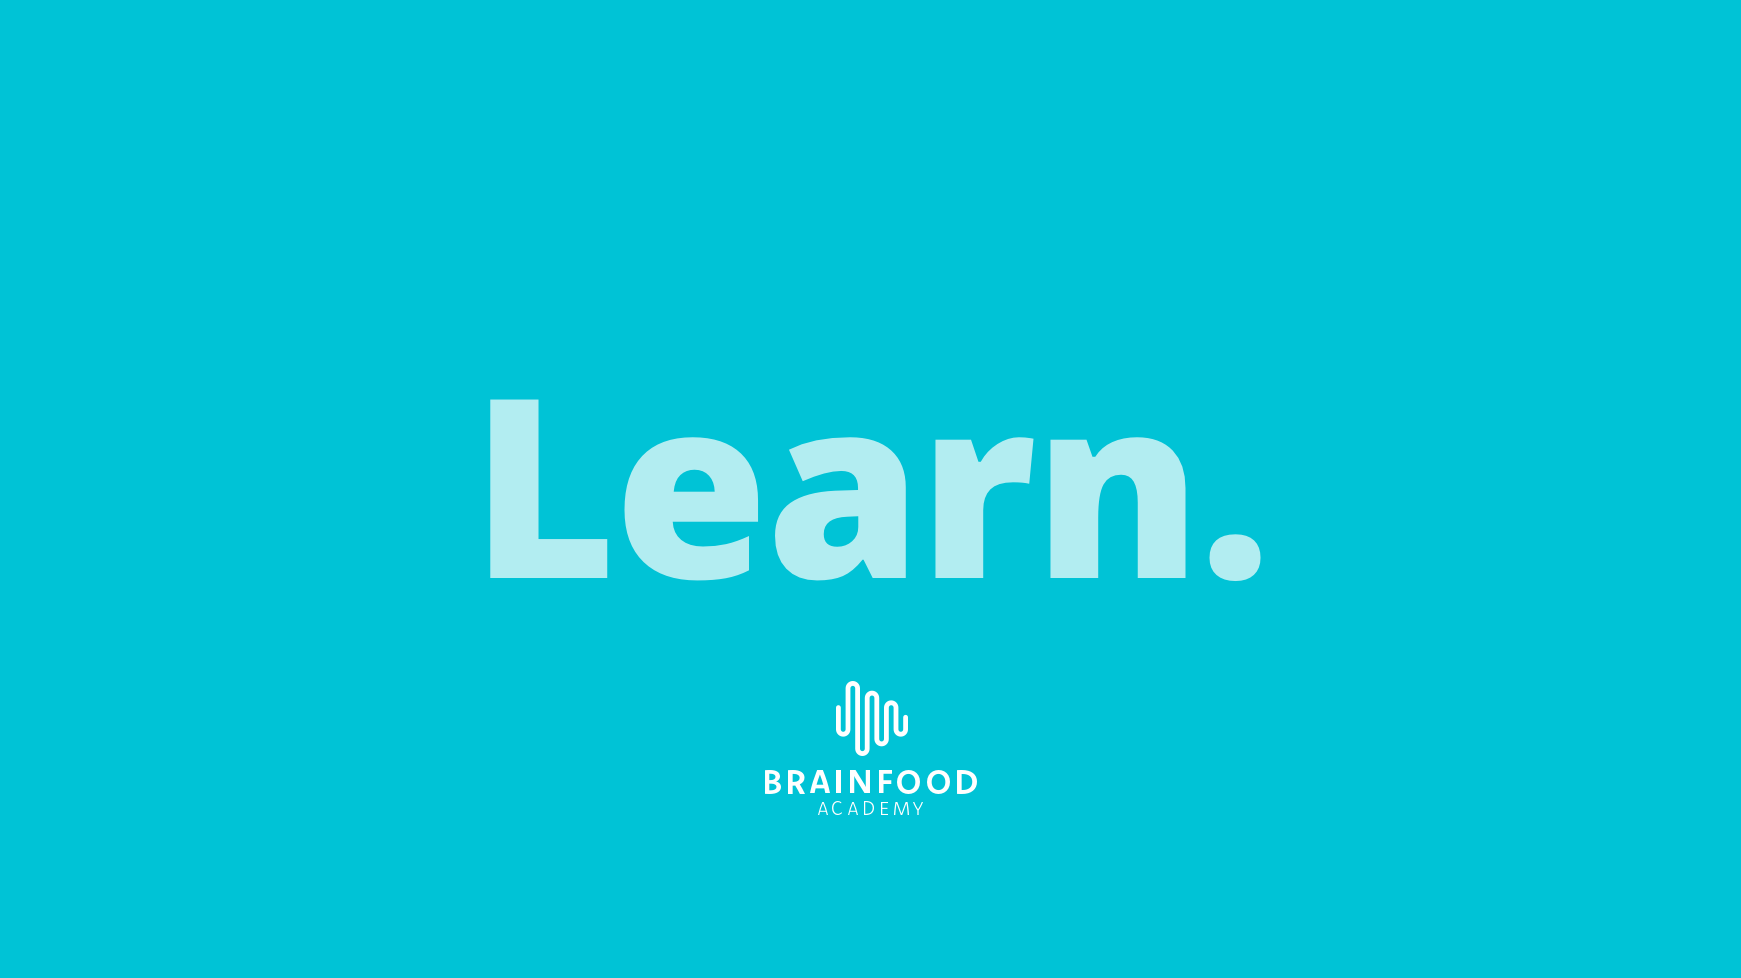 Das Corporate Design der Brainfood Academy